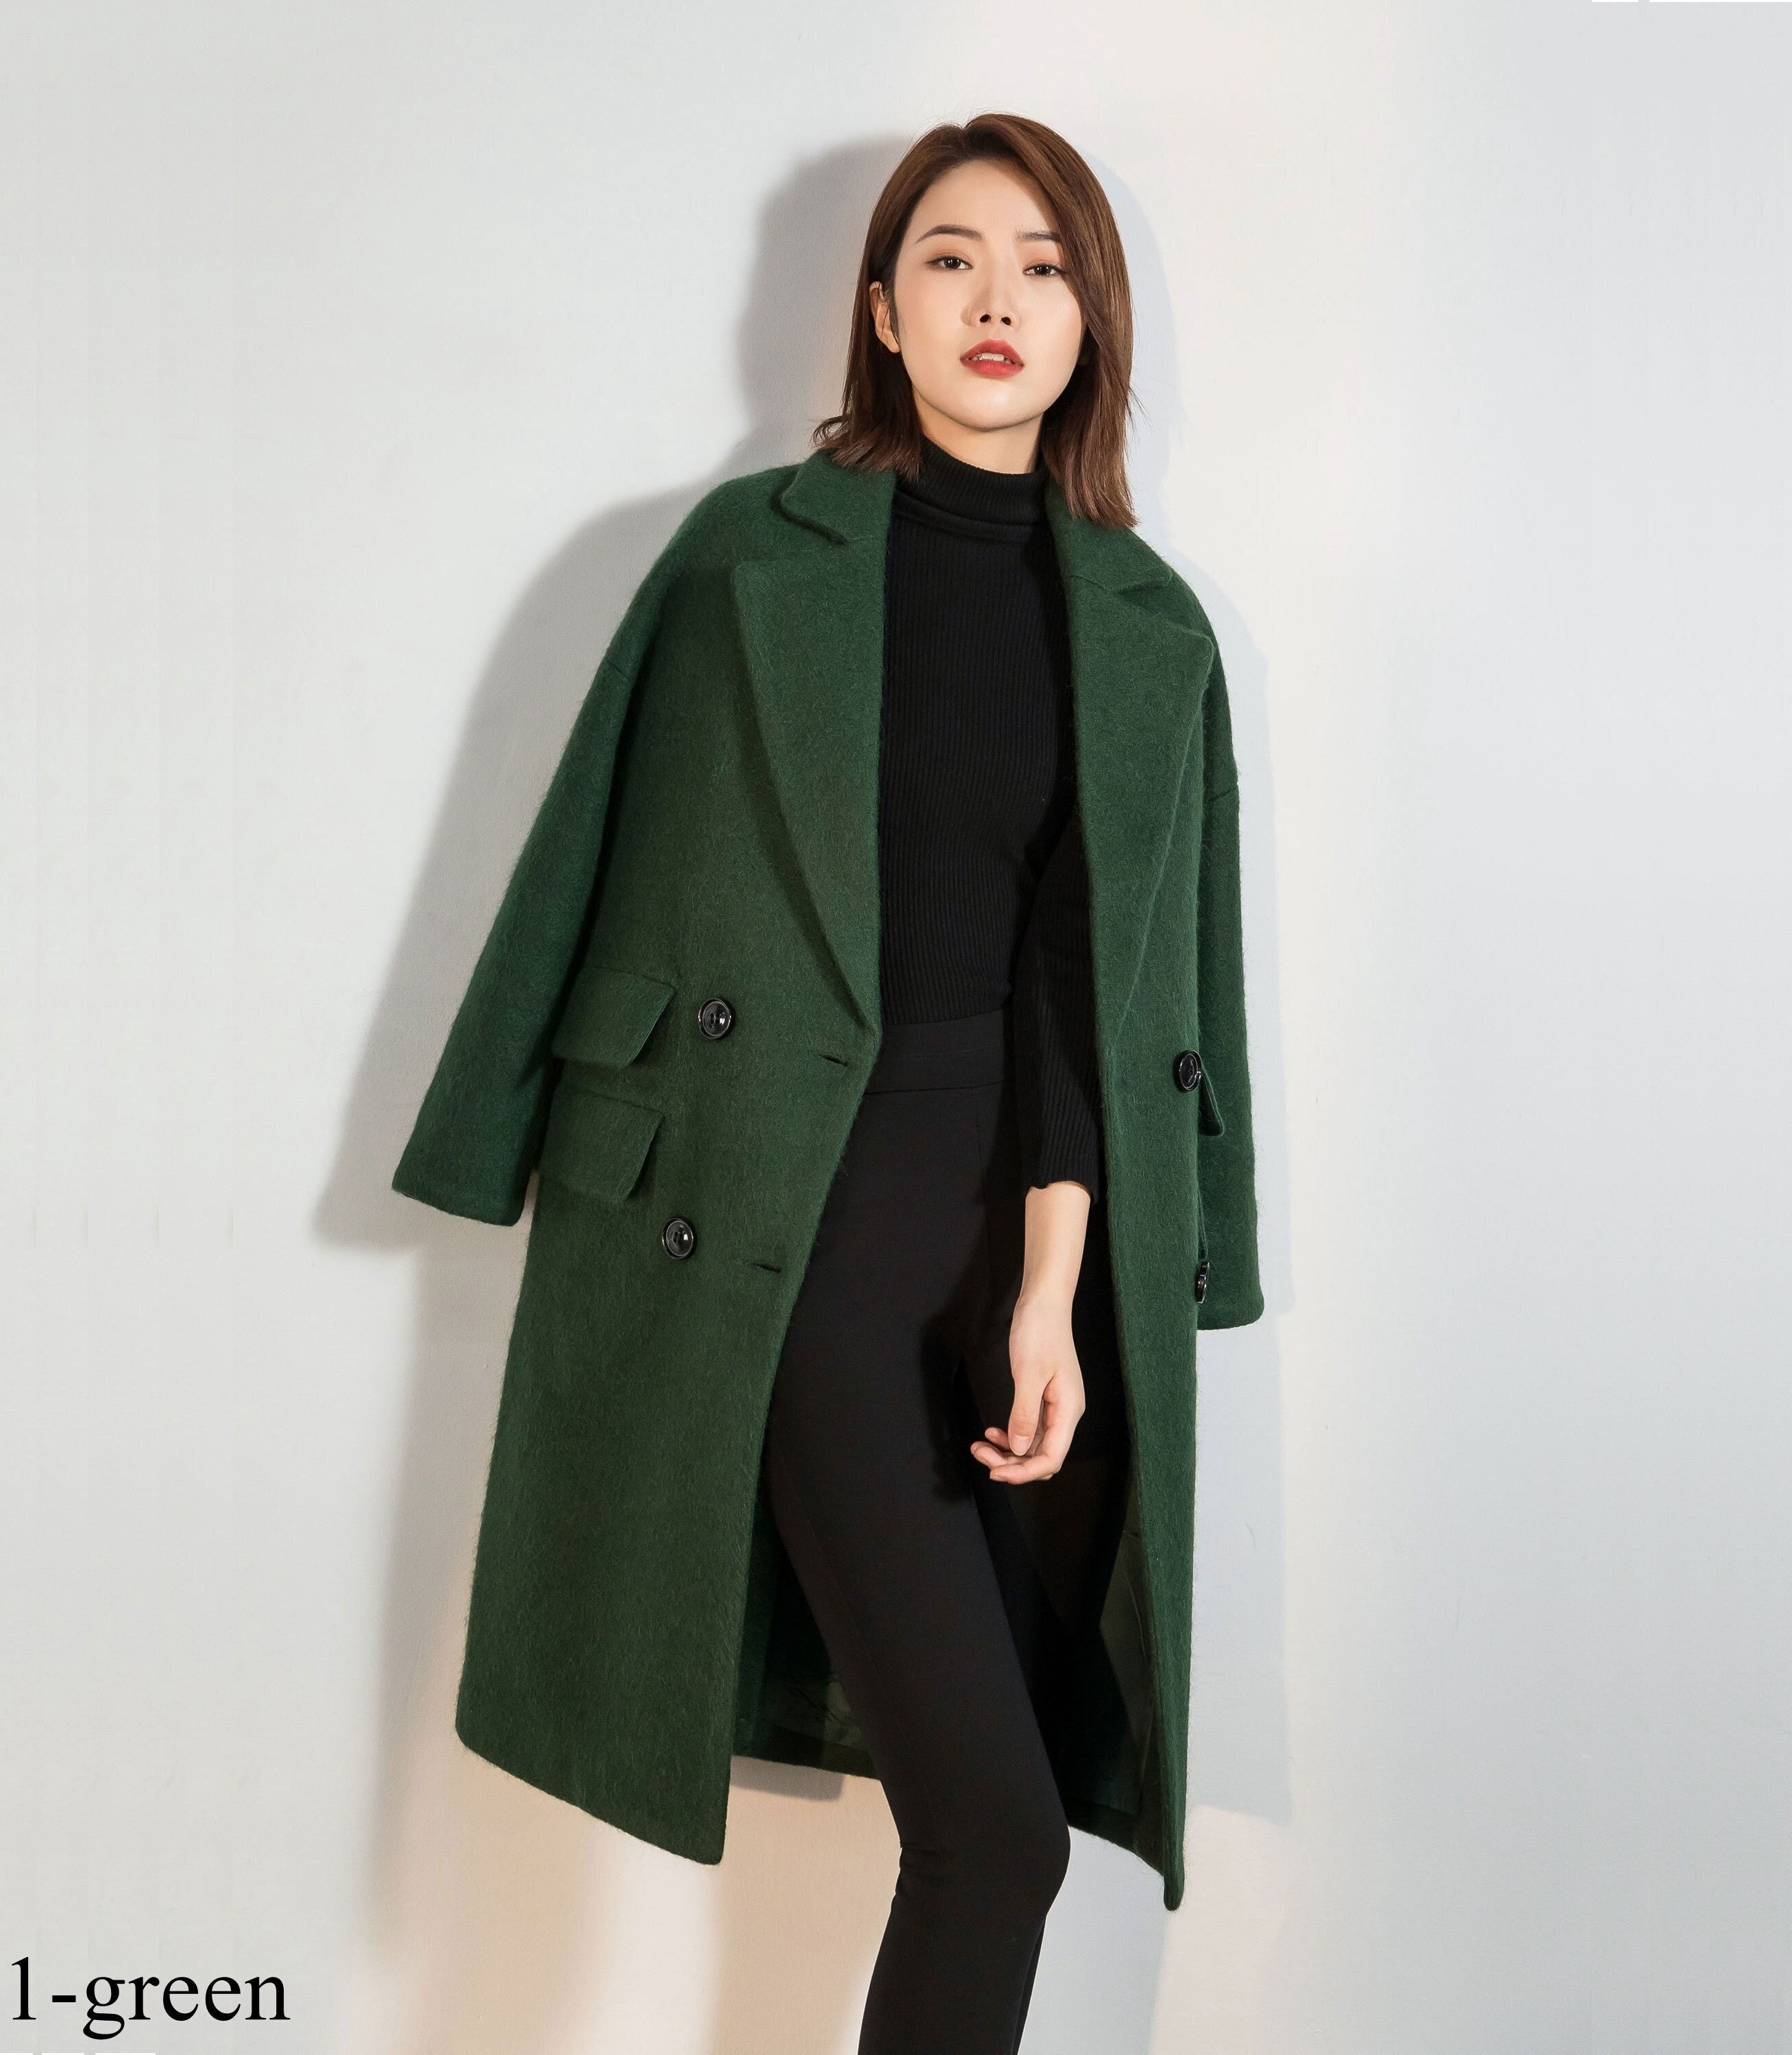 Wool Coat Green Long Wool Coat Warm Winter Coat Women - Etsy